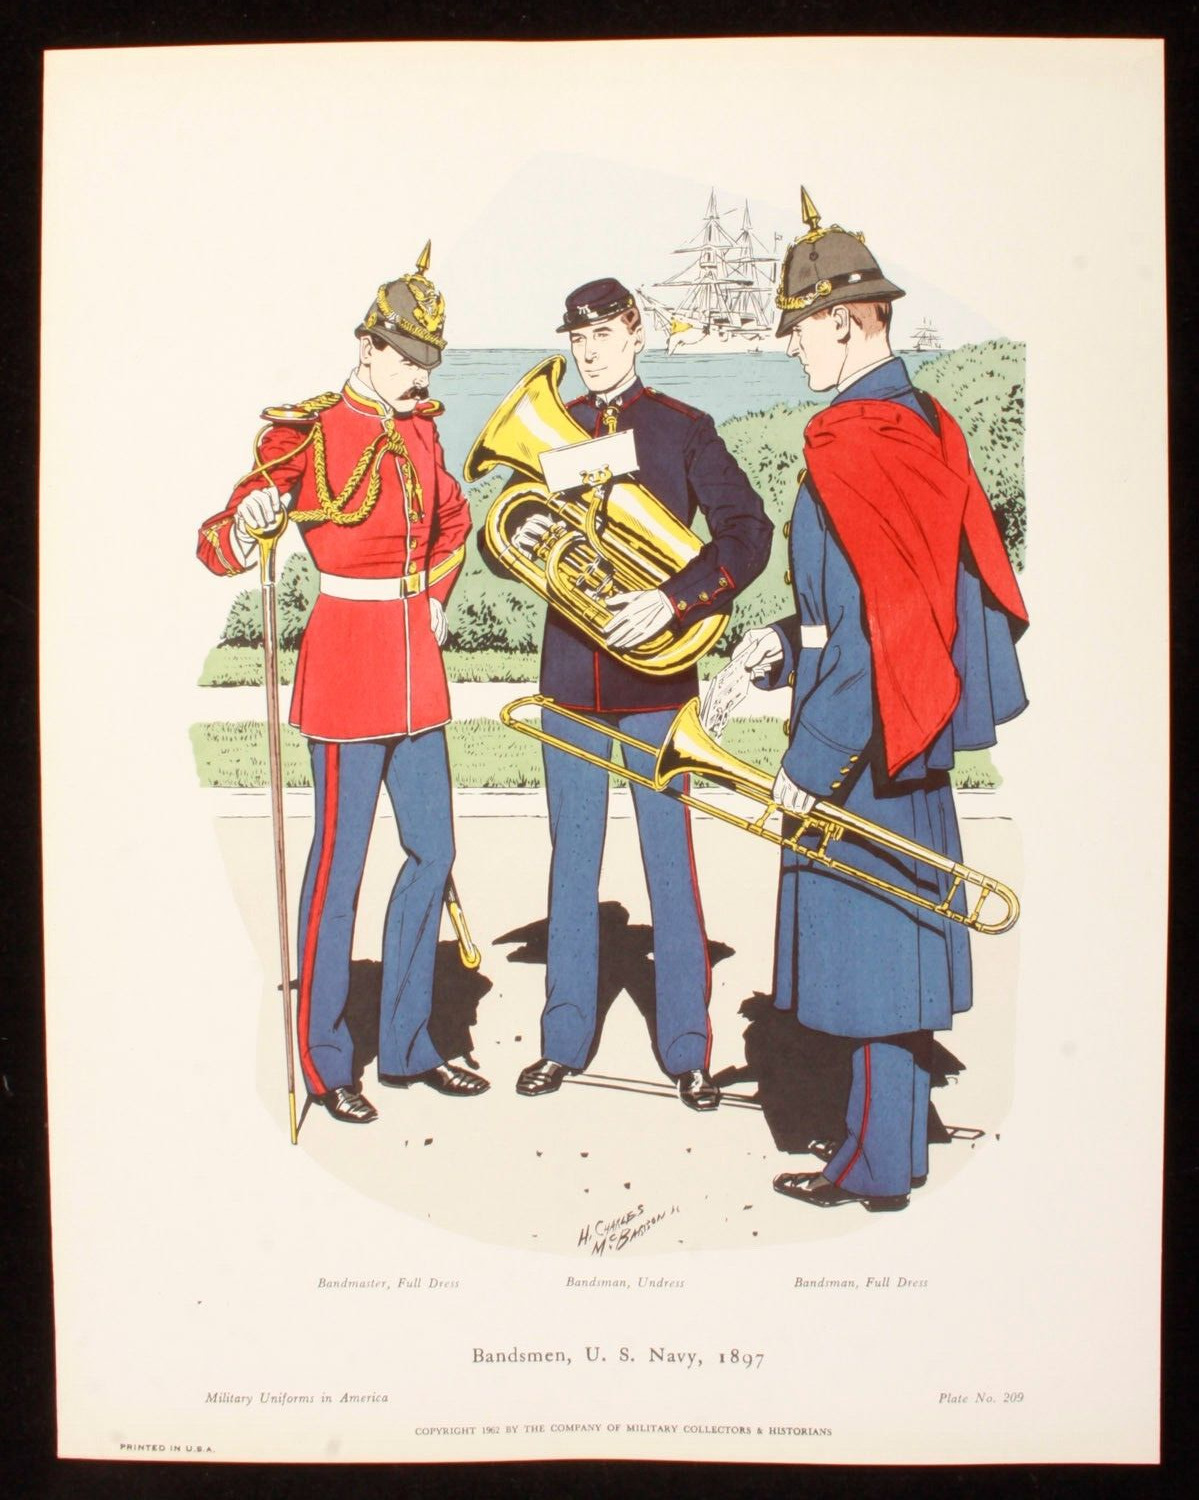 Bandsmen U.S. Navy 1897 Illustration 11x14